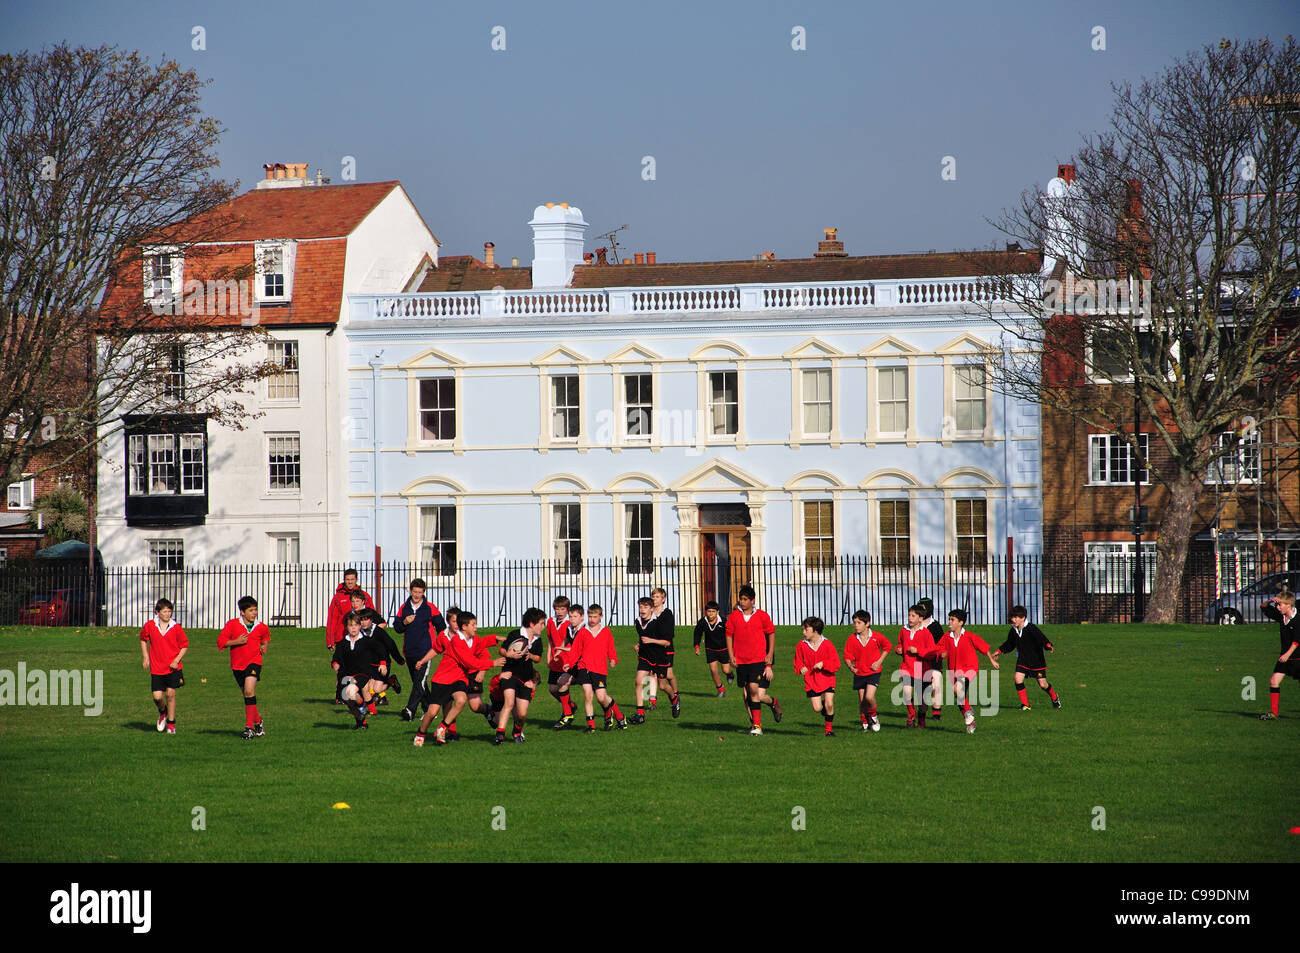 Les garçons à jouer au rugby sur les terrains de la Marine royale, Vieux Portsmouth, Portsmouth, Hampshire, Angleterre, Royaume-Uni Banque D'Images